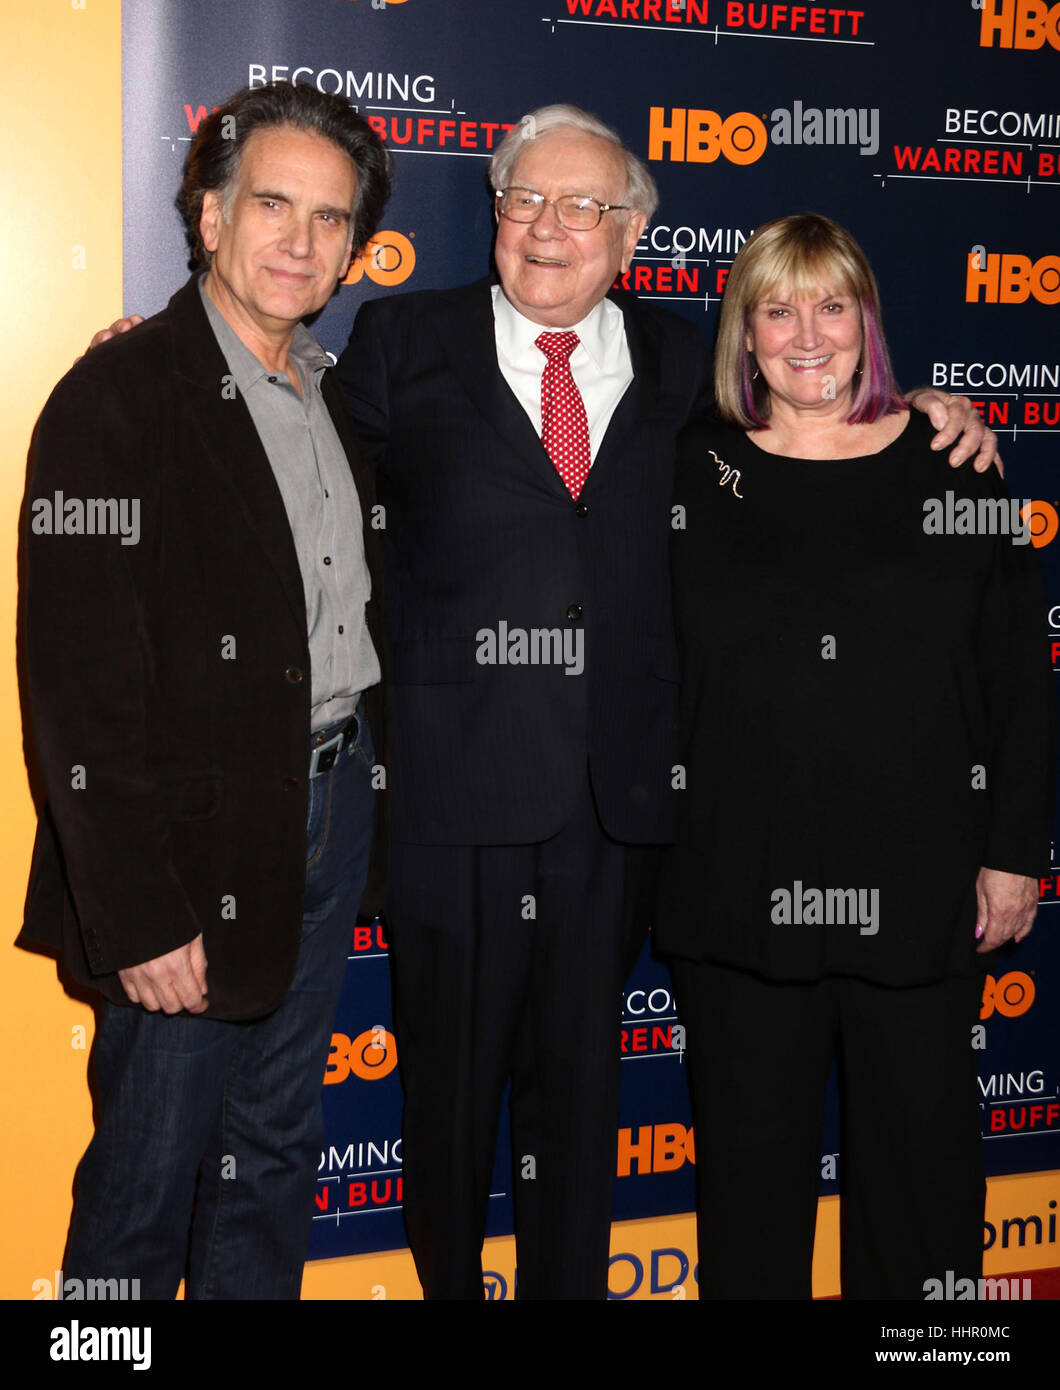 Nueva York, Estados Unidos. 19 ene, 2017. El empresario Warren Buffett con  sus hijos Peter Buffett y Susie Buffett en el estreno mundial de la  película de HBO 